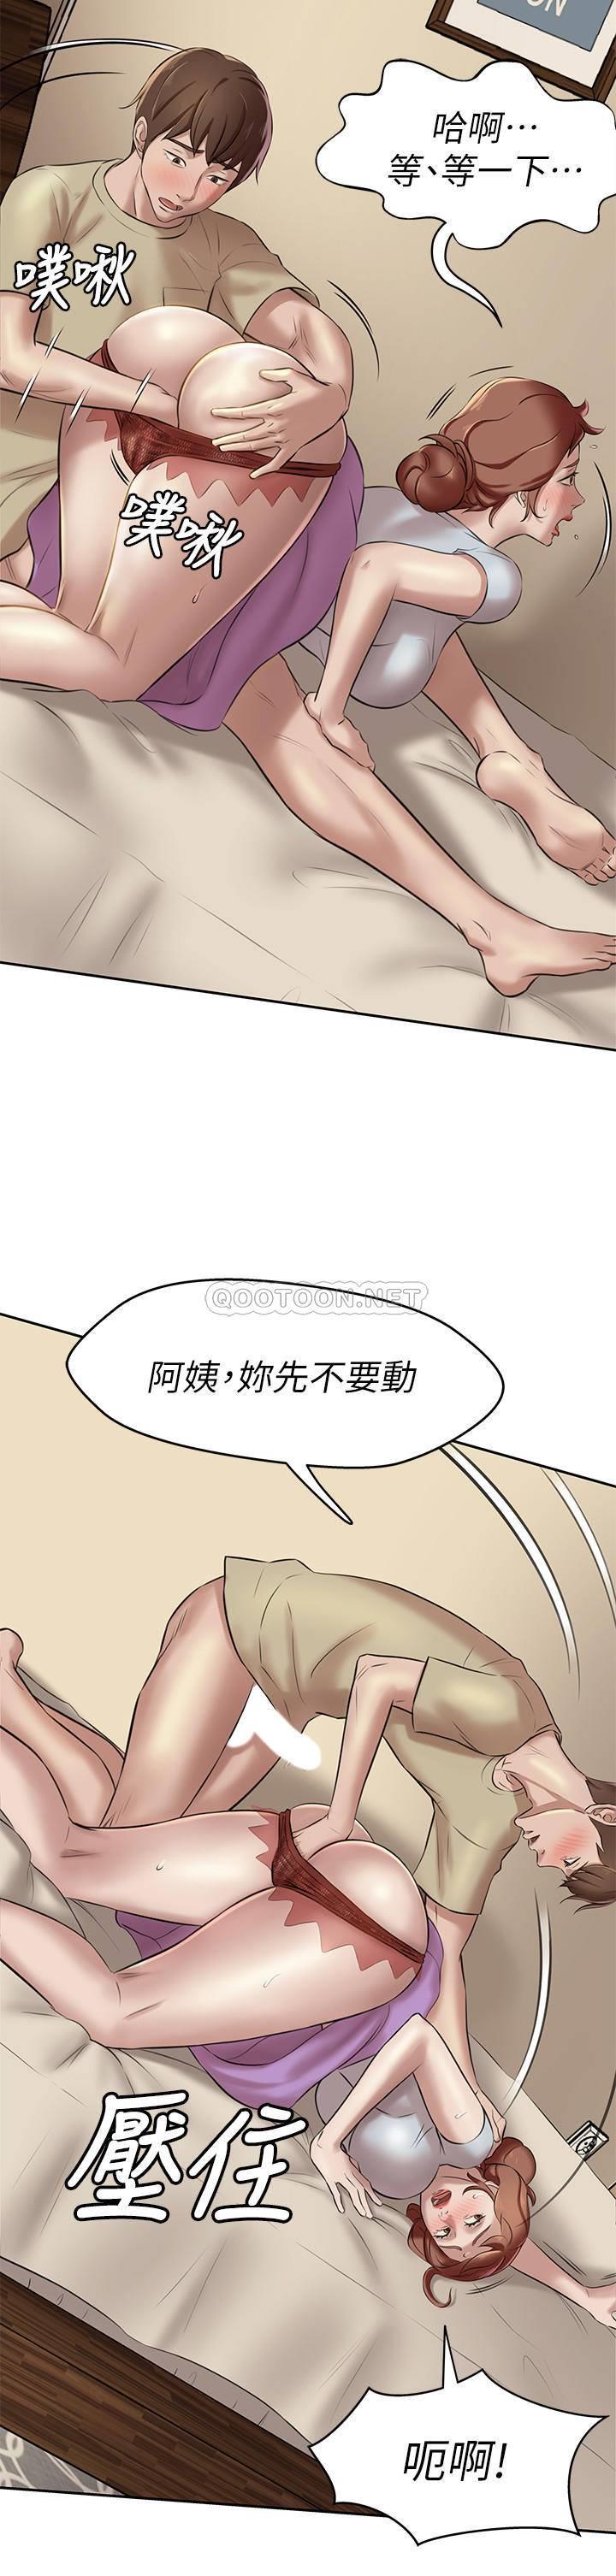 韩国污漫画 小褲褲筆記 第9话 - 跟我zuò最后一次吧…! 24